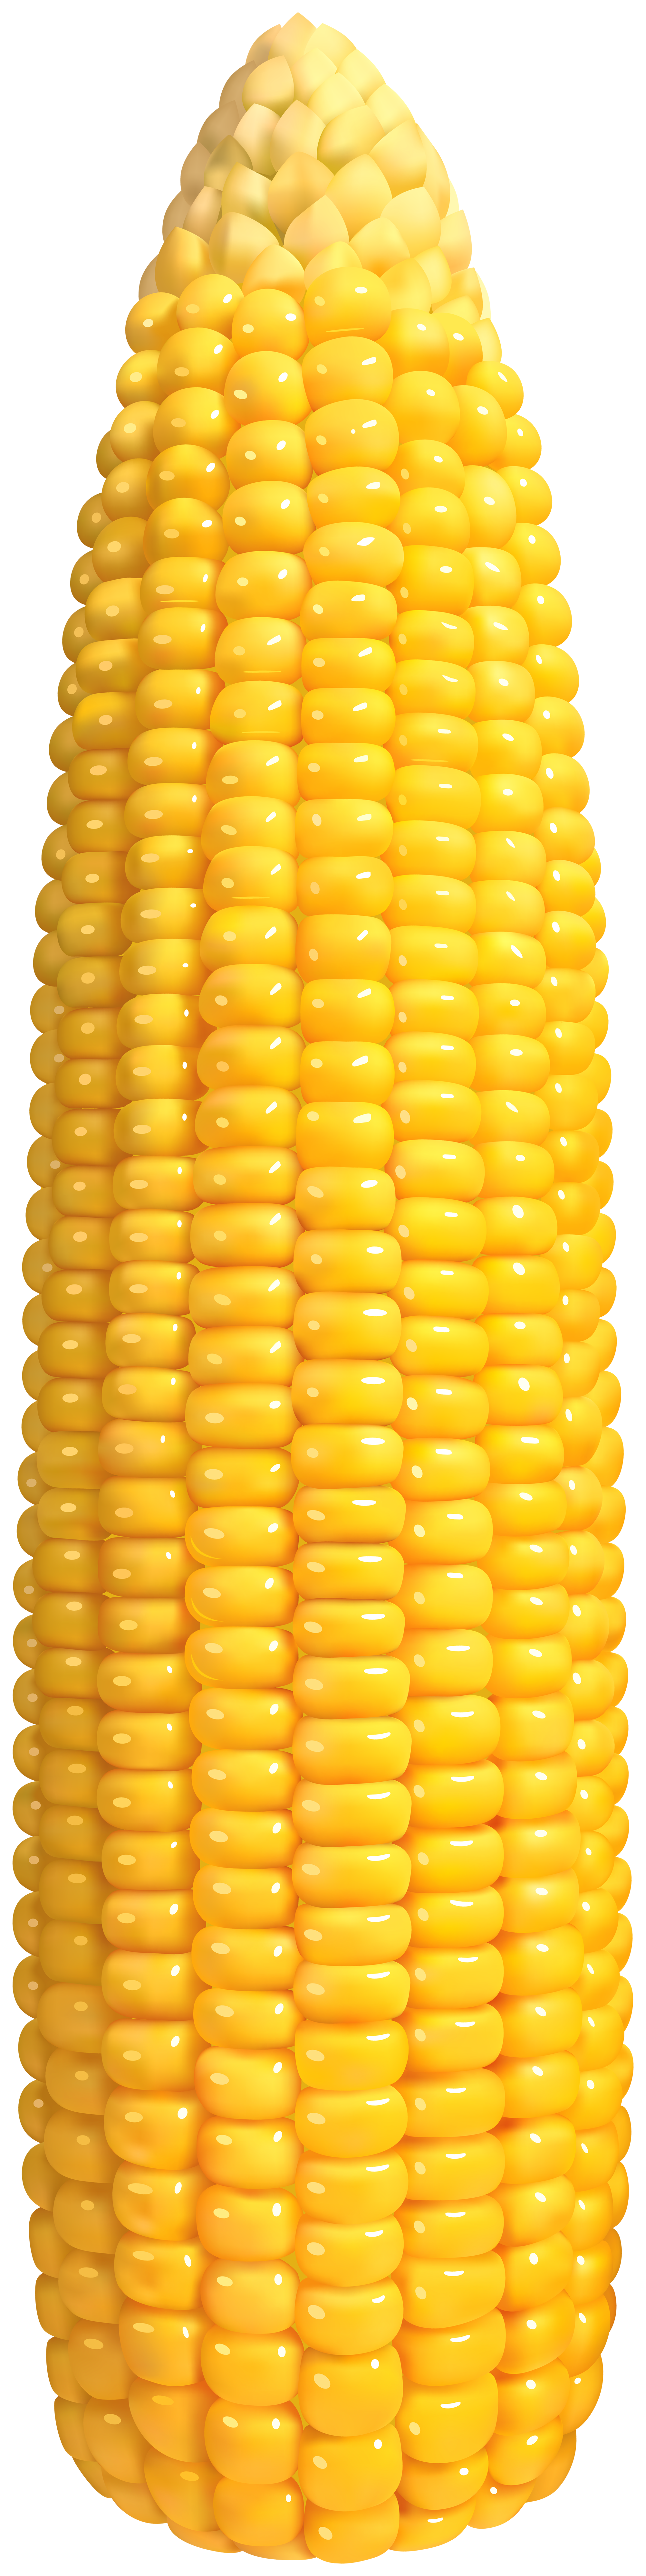 Corn PNG Clip Art.